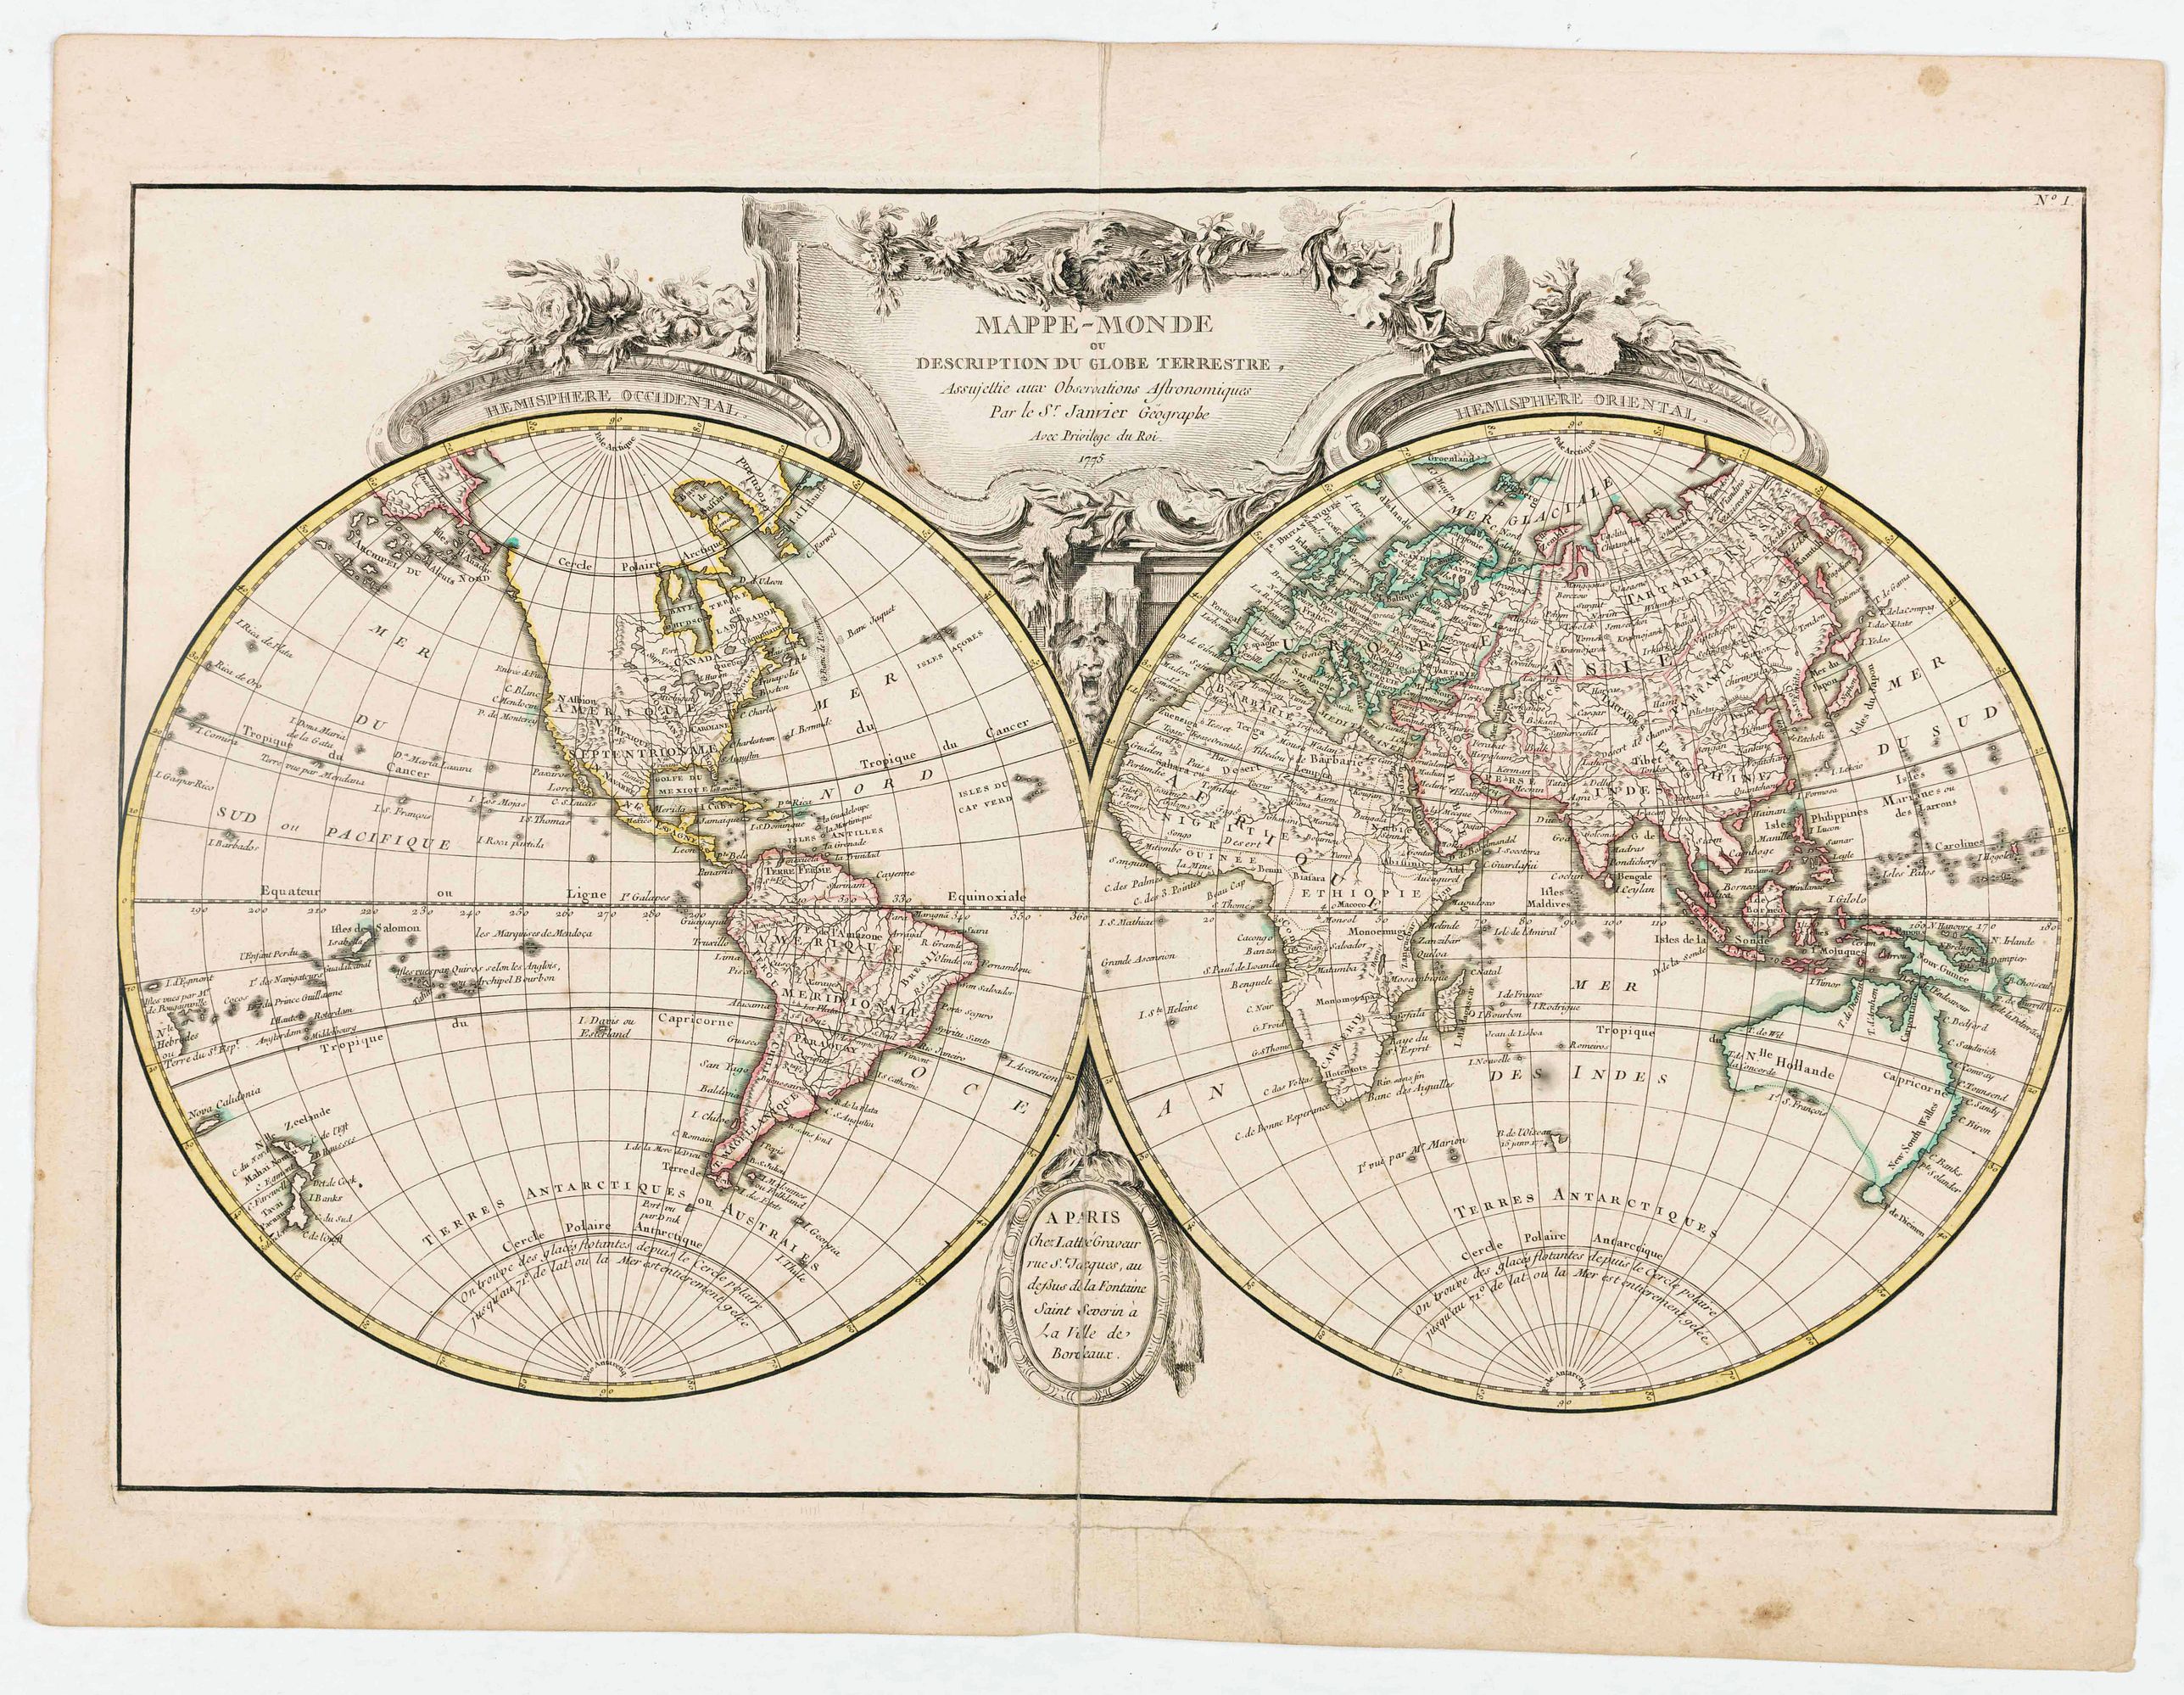 Mappe-Monde ou Description du Globe Terrestre.. - Old map by LATTRÉ ...